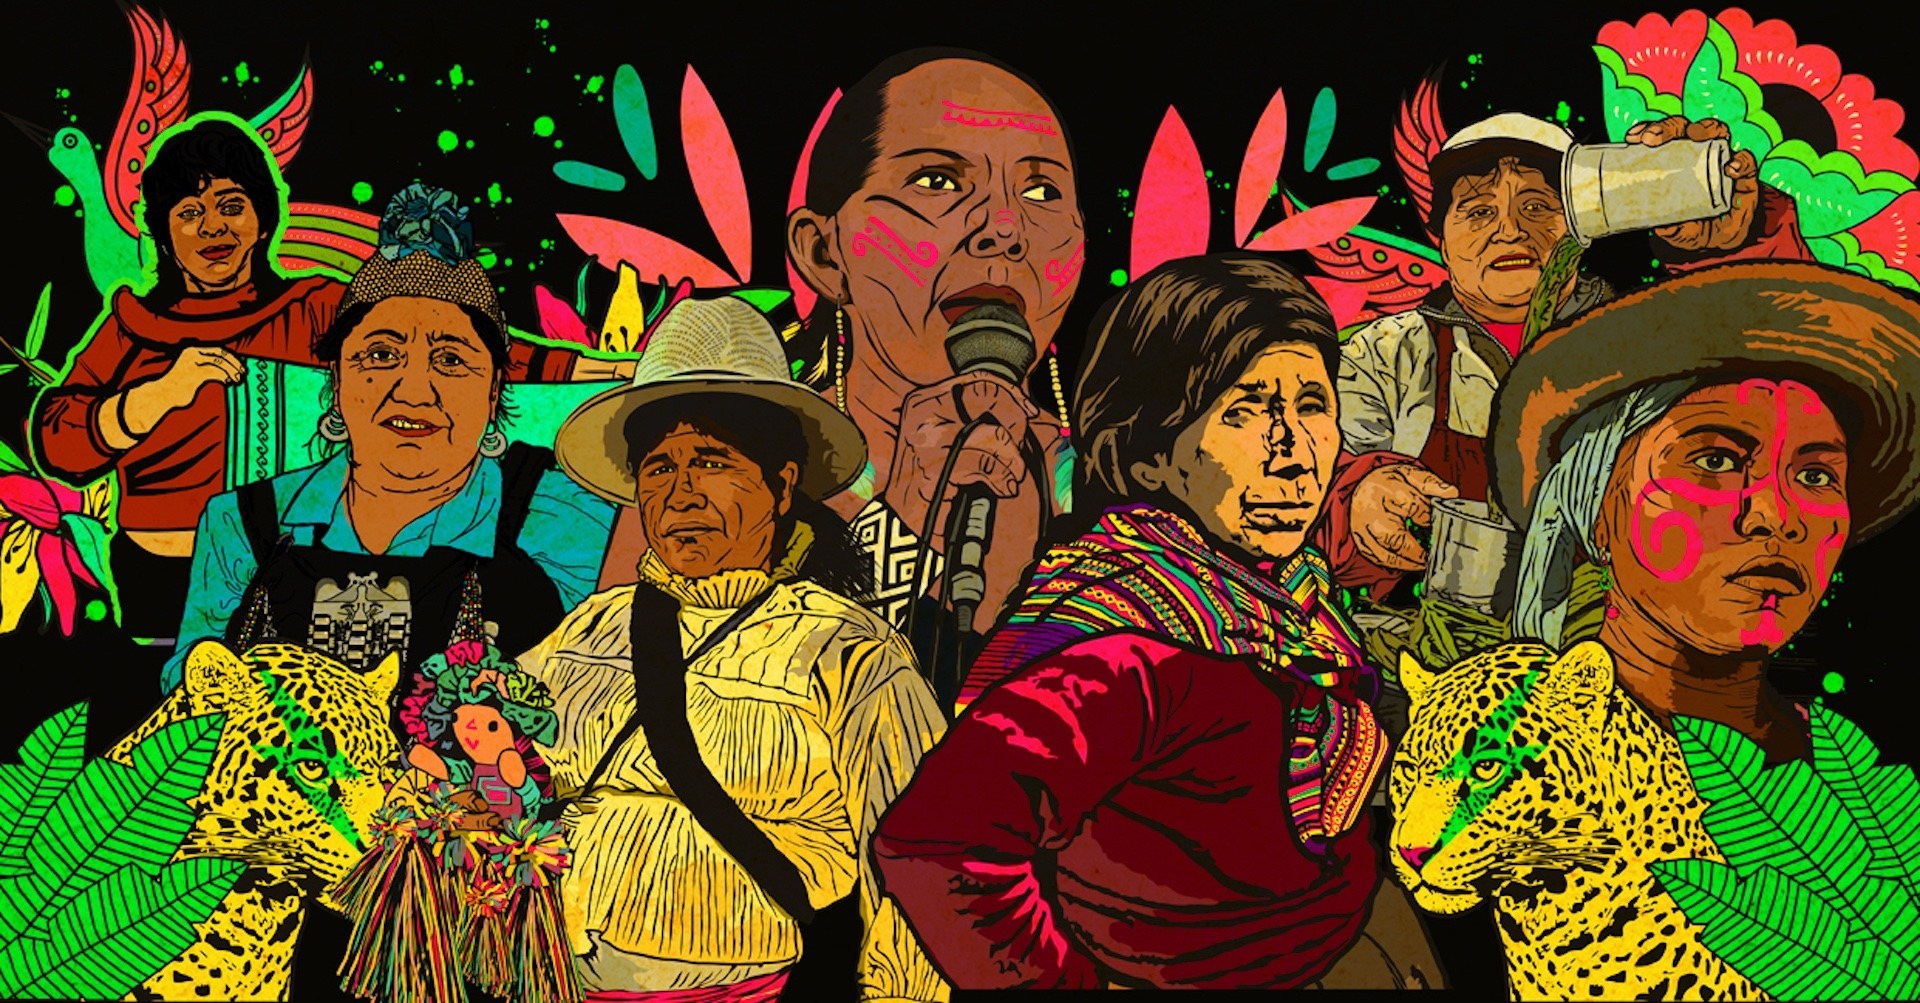 Crece el papel de las mujeres en la lucha indígena, sostiene Álvaro Pop